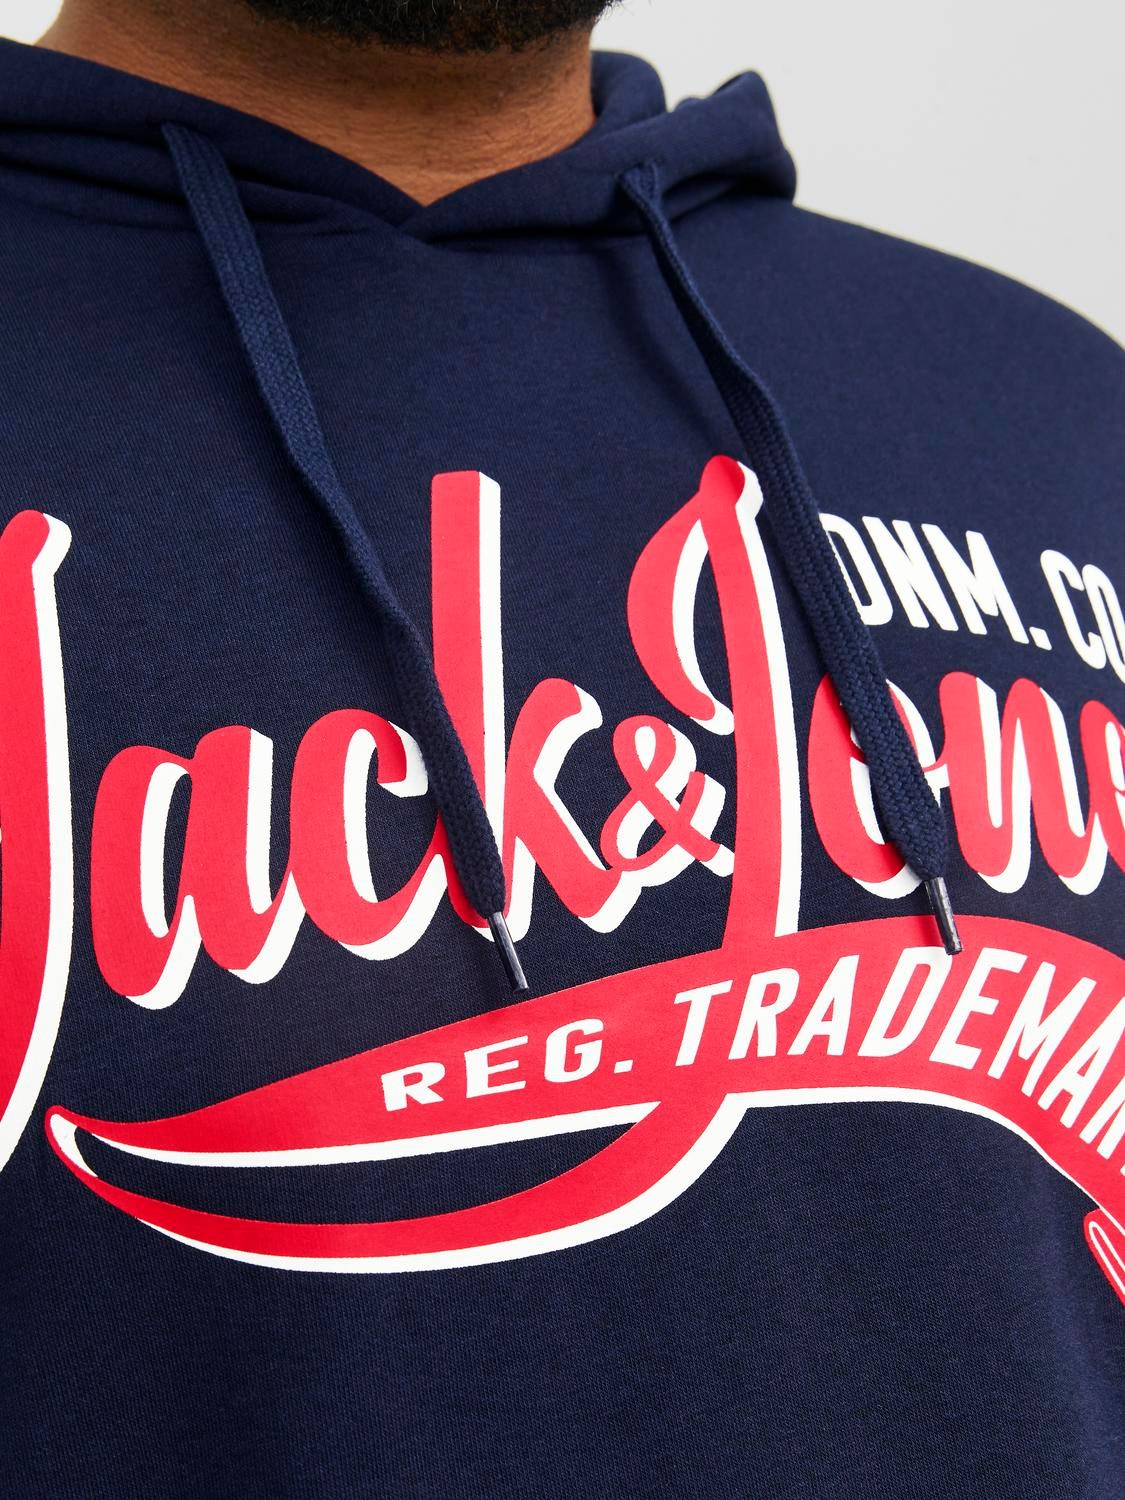 Jack & Jones Plus Size Logo Hættetrøje -Navy Blazer - 12236803